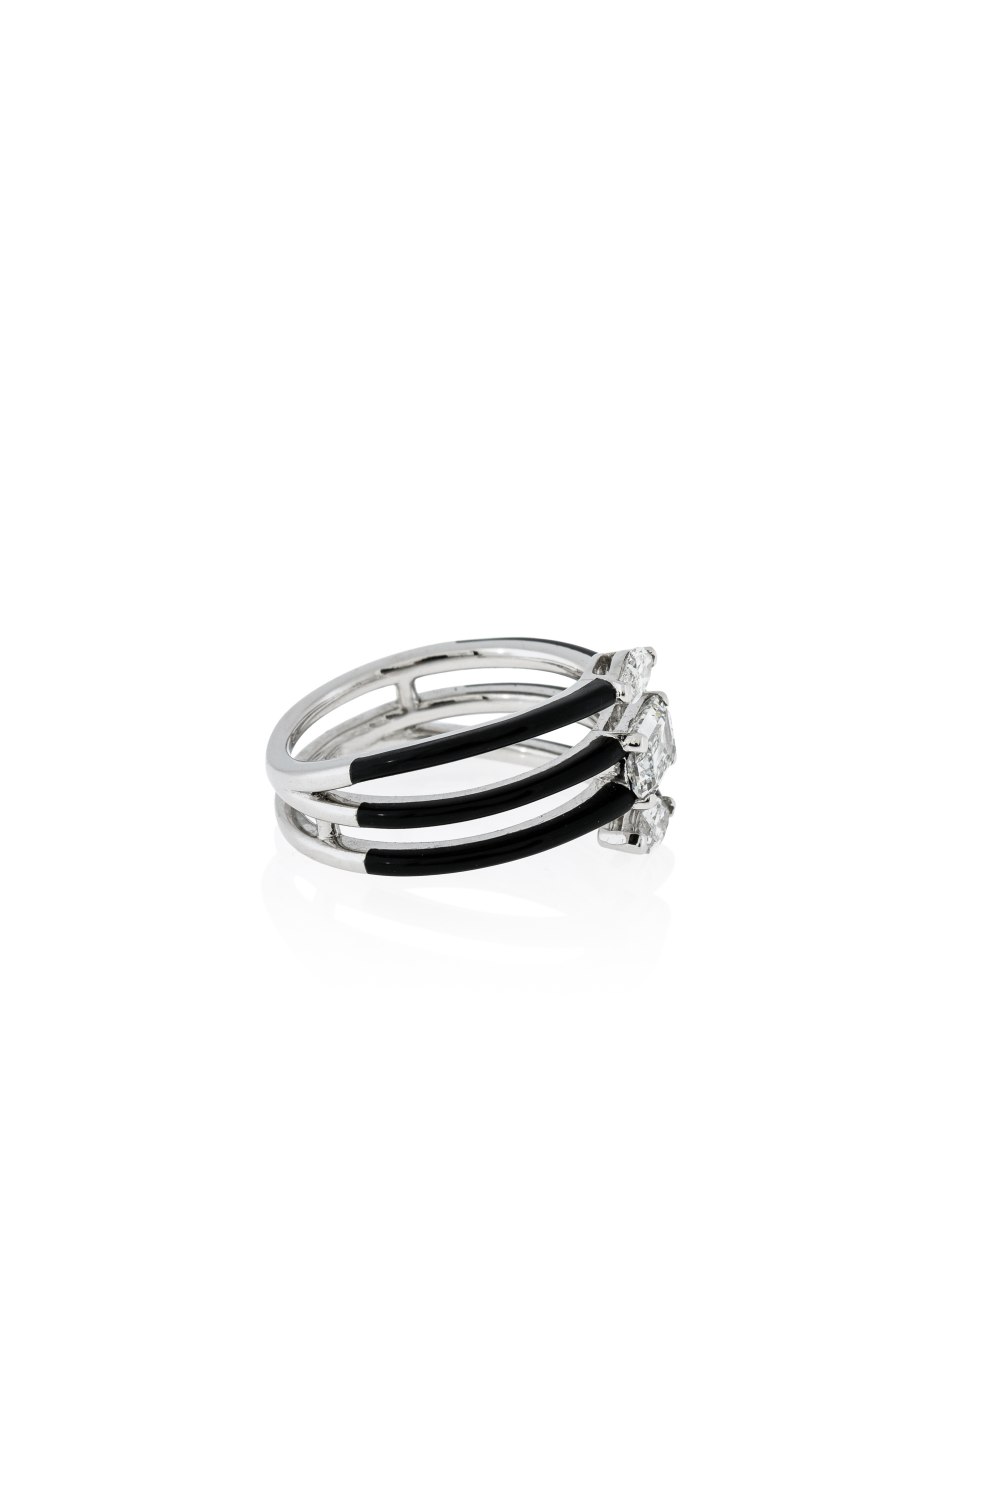 Black Ceramic & Diamond Contemporary Ring